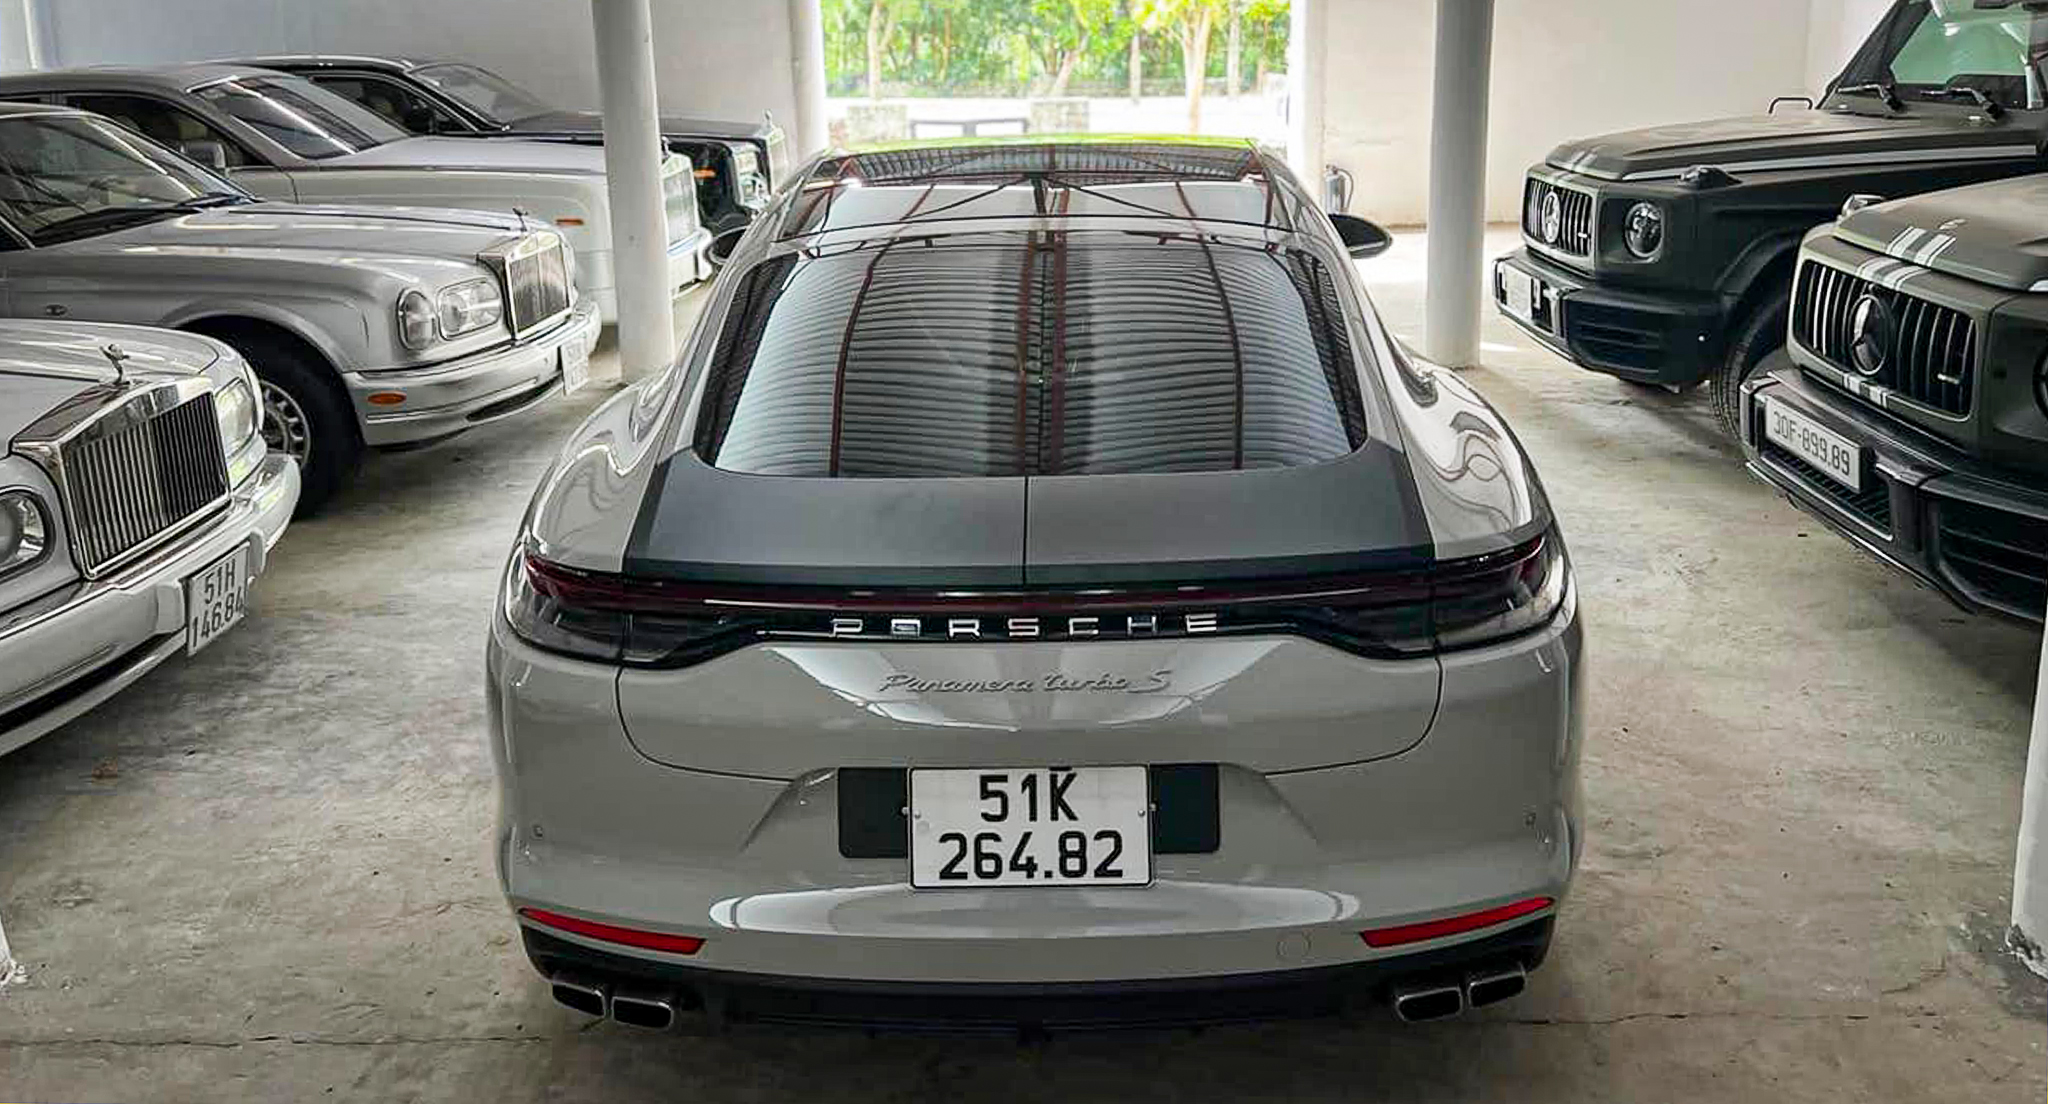 Porsche Panamera Turbo S 2022 độc nhất Việt Nam về tay ông Đặng Lê Nguyên Vũ 290757463-2226638387511912-6882372155016937682-n.jpg